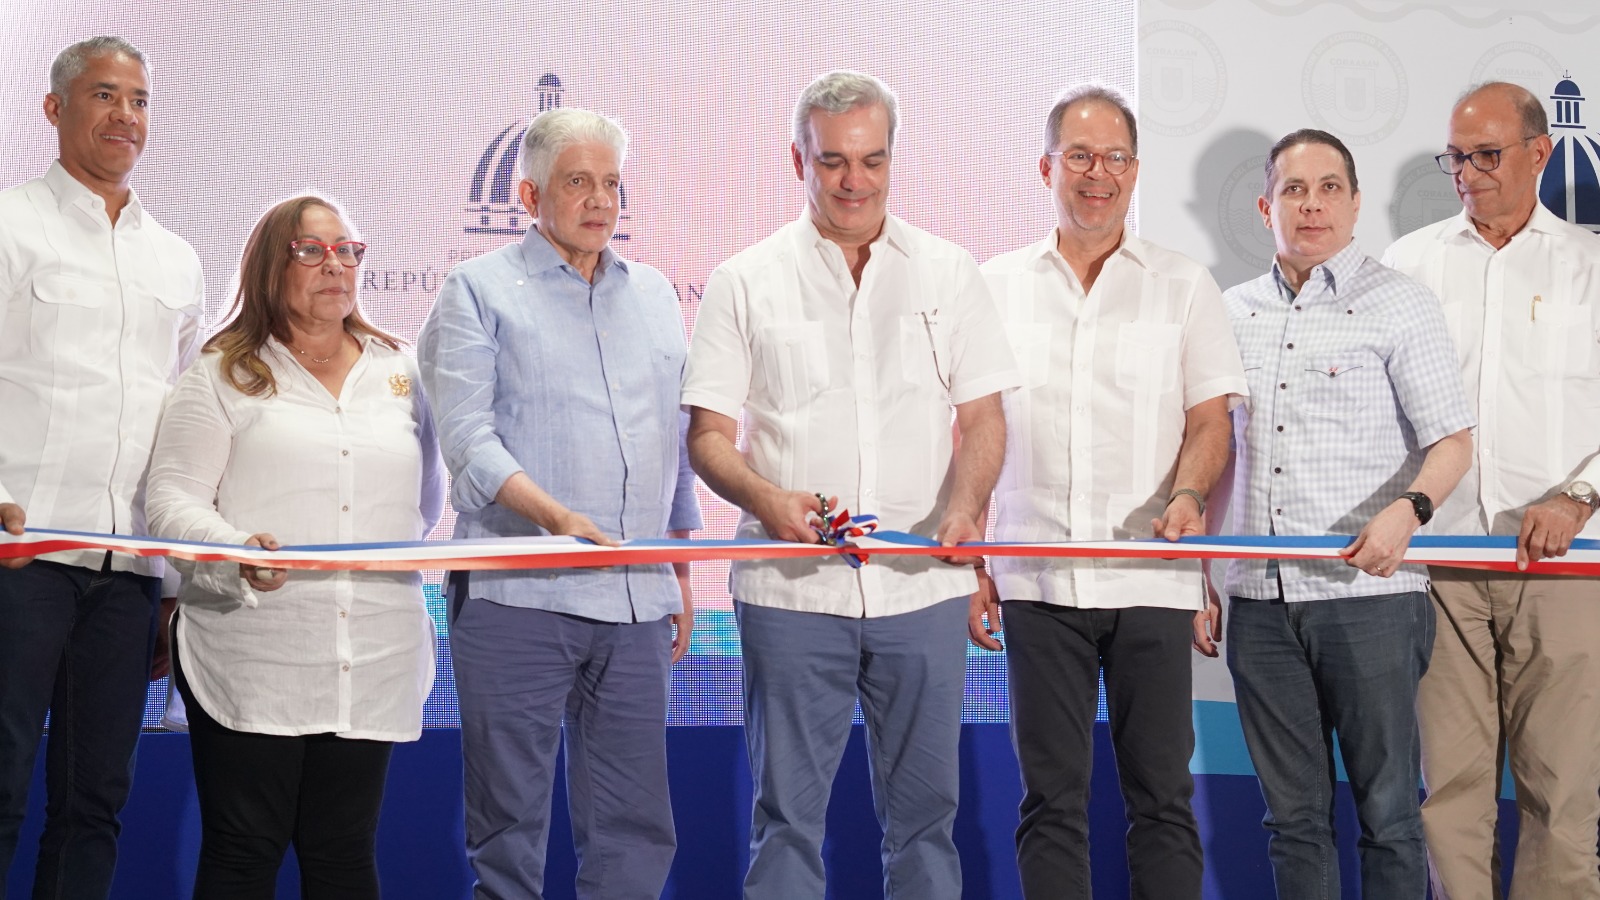 REPÚBLICA DOMINICANA: Presidente Abinader inaugura soluciones aguas residuales en Santiago por más de 460 millones de pesos